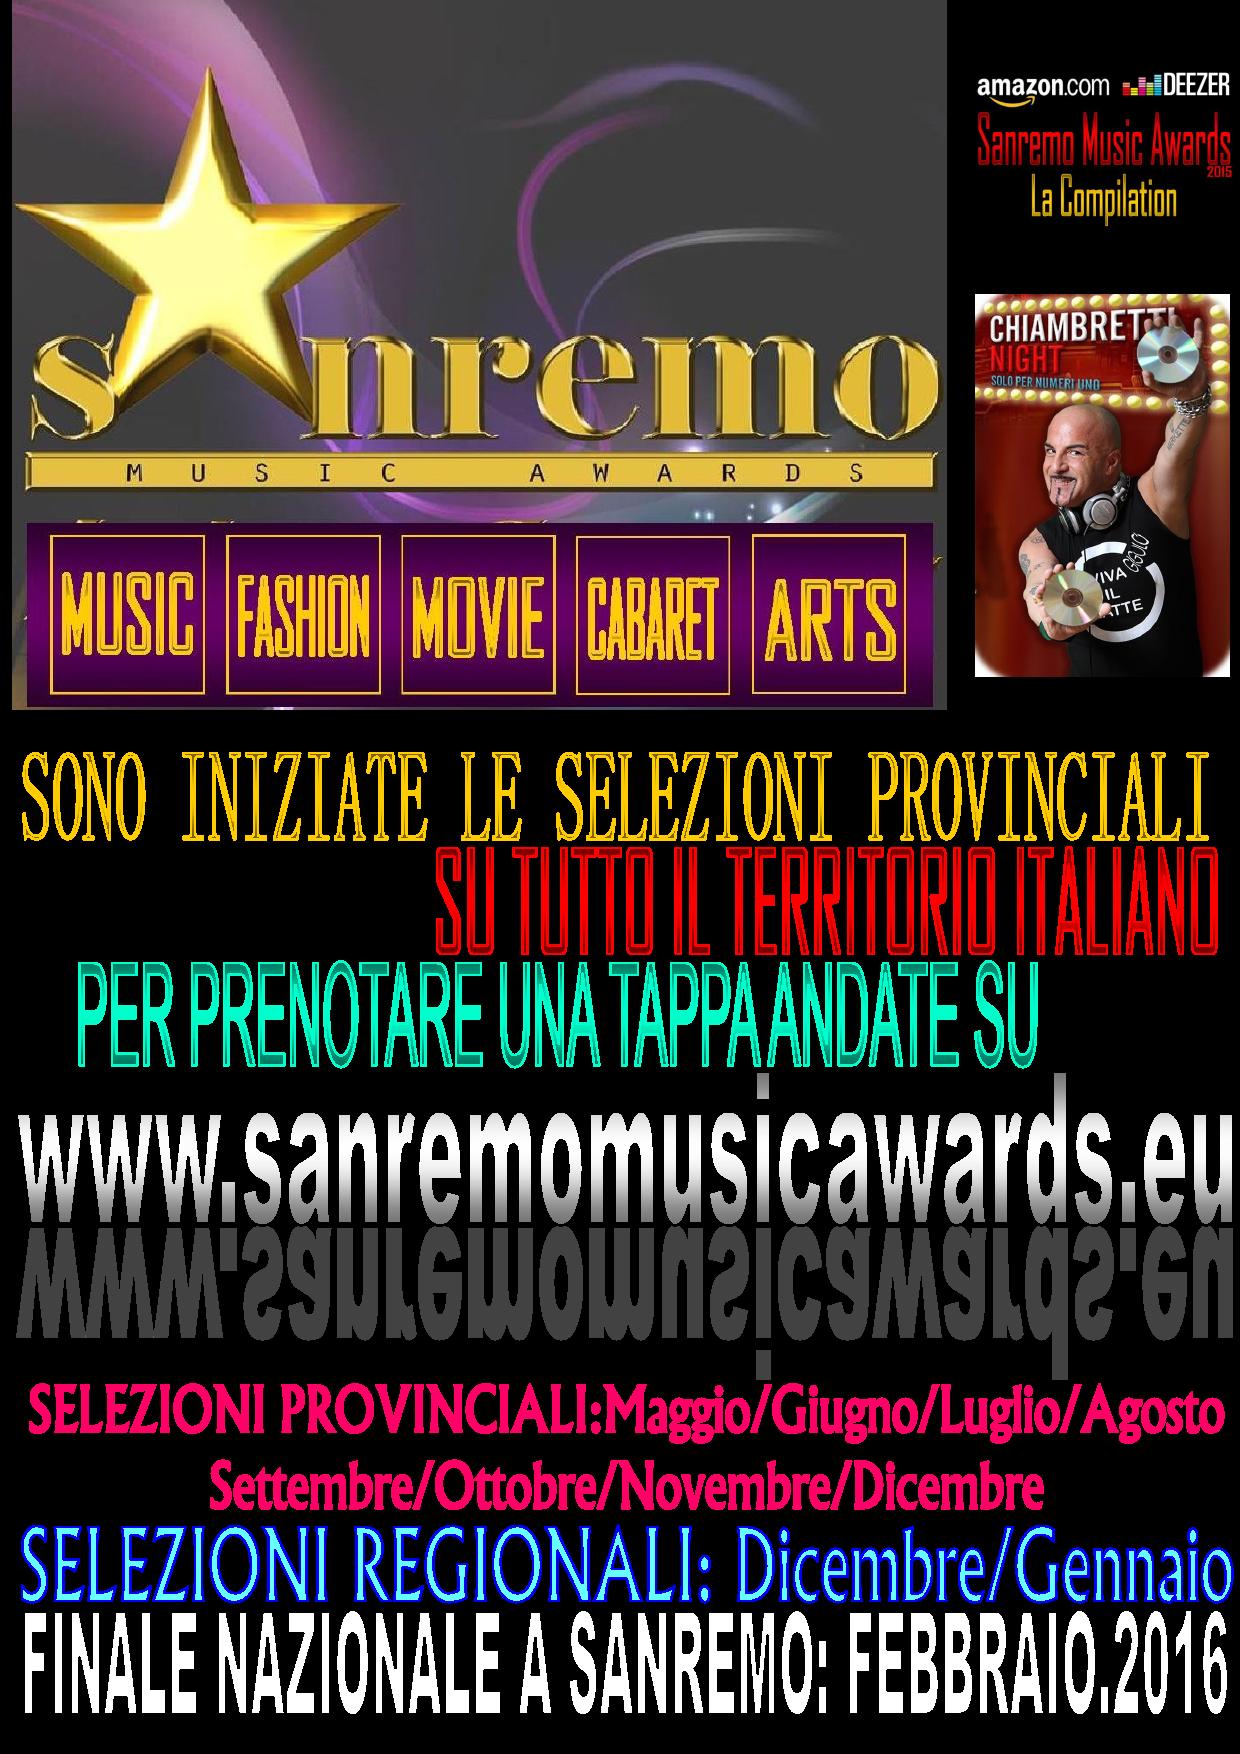 NUOVE TAPPE ALL’ESTERO PER IL SANREMO MUSIC AWARDS E FORMULA RINNOVATA PER L’ITALIA